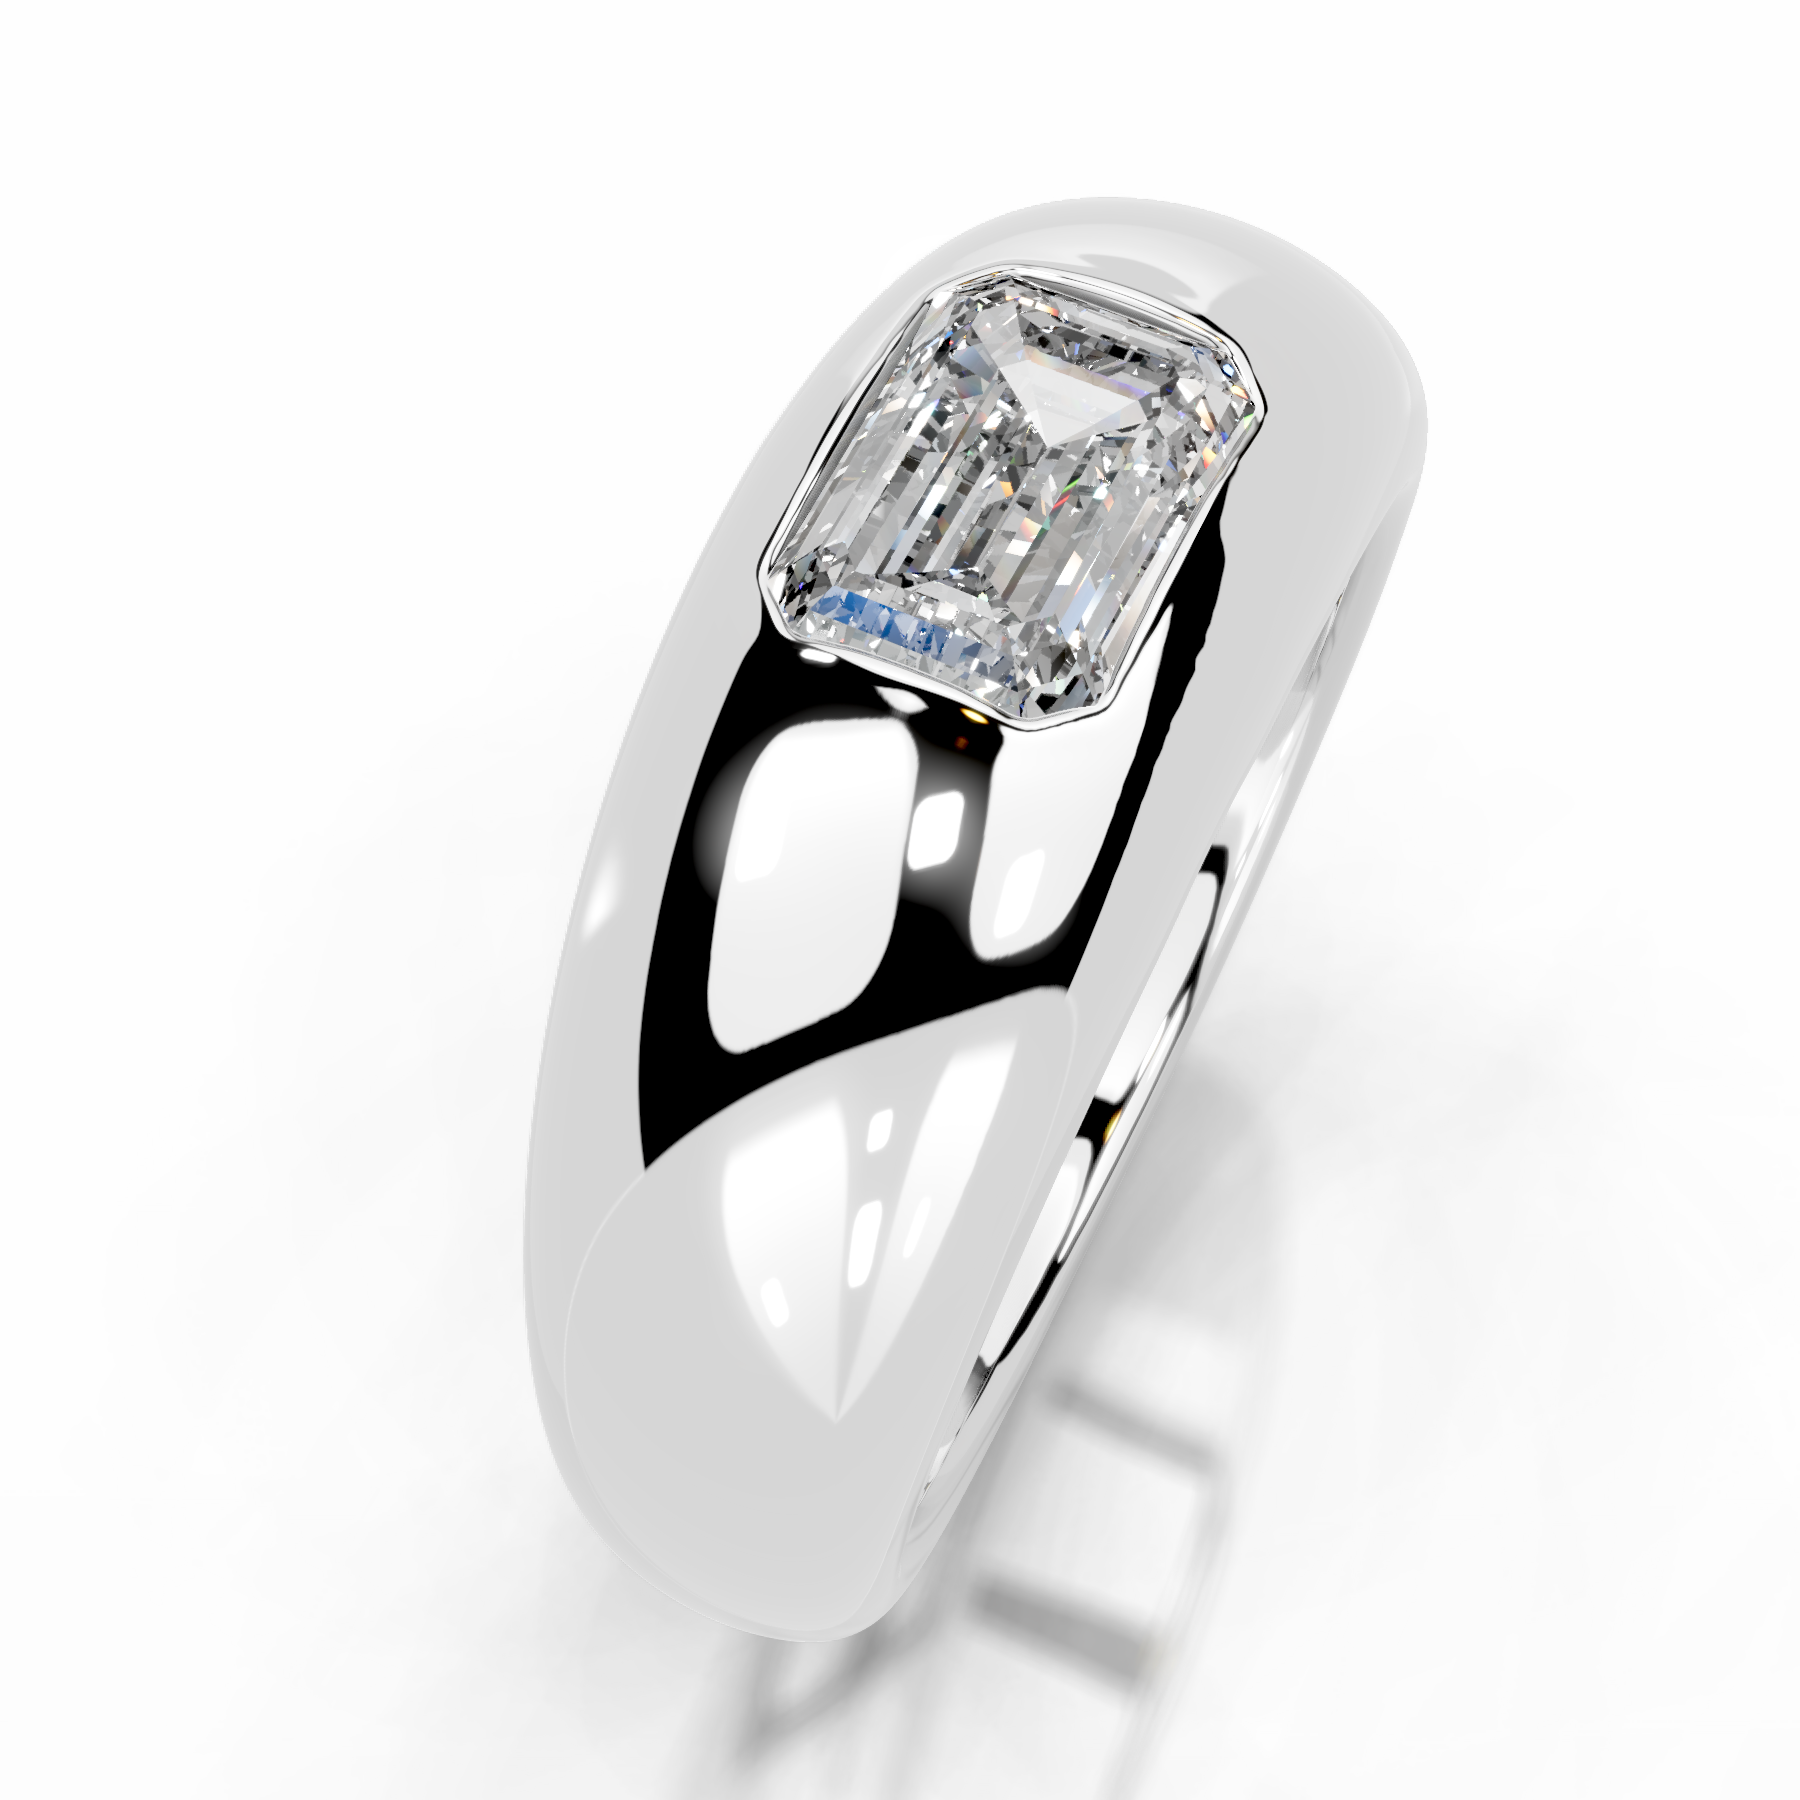 Amari Diamond Engagement Ring   (1 Carat) -18K White Gold